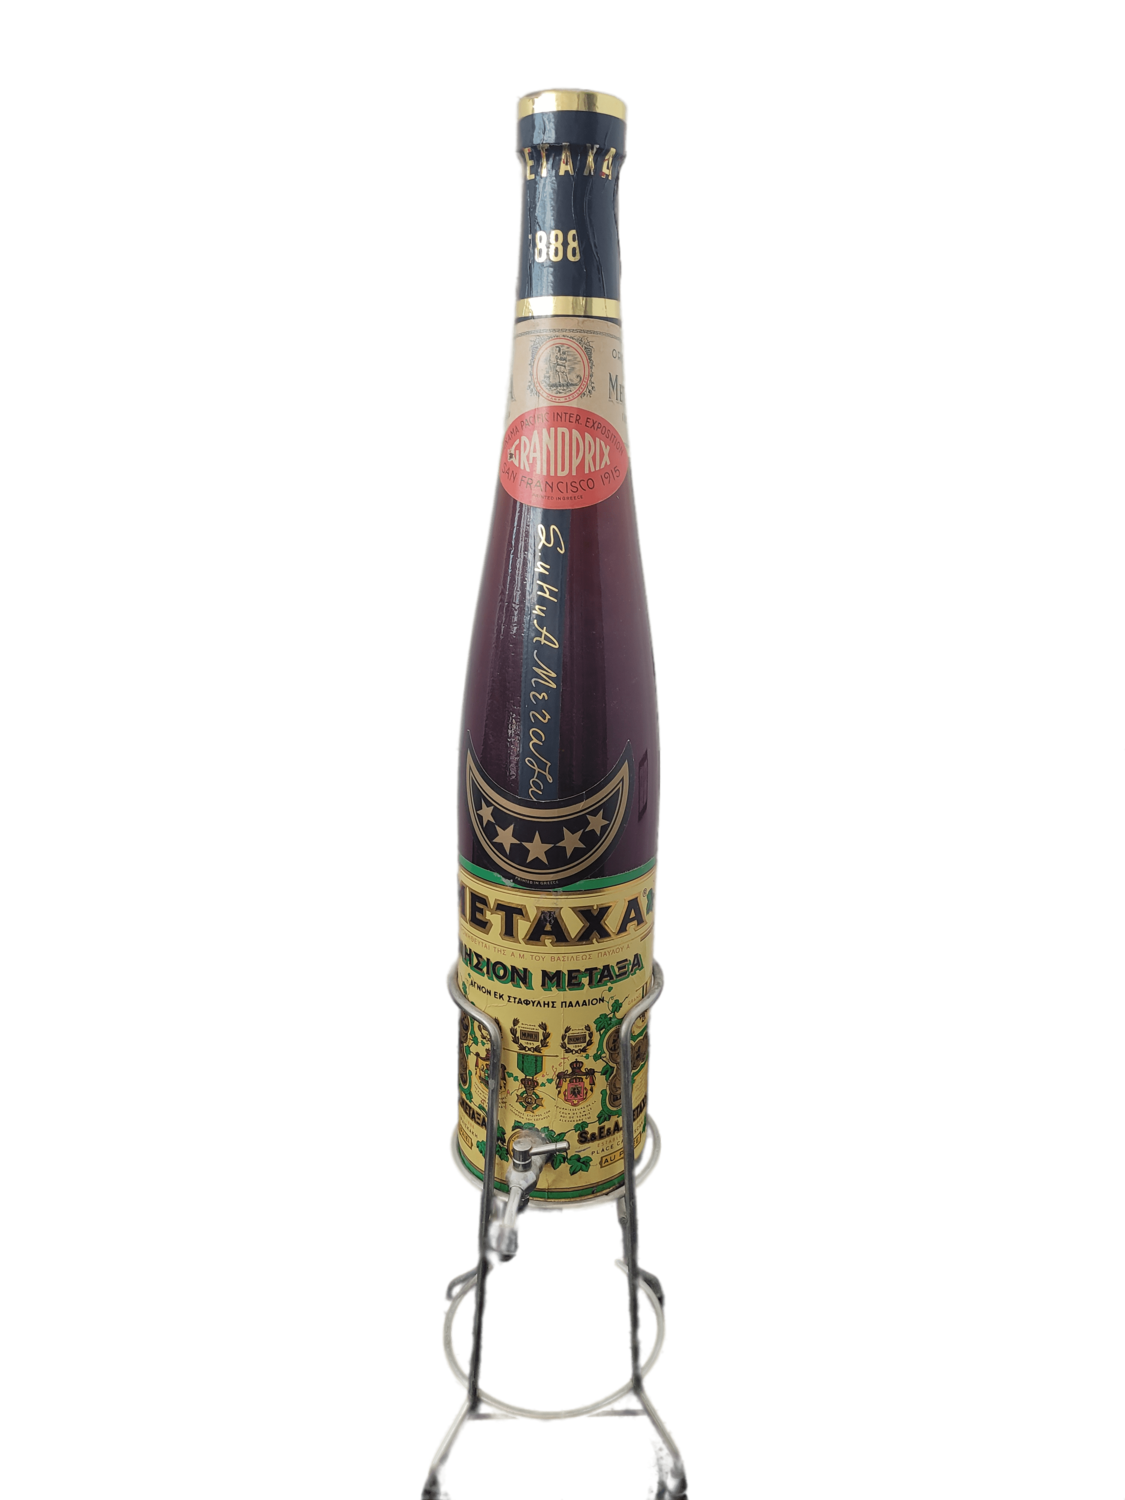 Metaxa 5 Sterne Griechenland 40% VOL. (1 x 3,0 ltr. Magnumflasche)  integrierter Zapfhahn in Flasche + Ständer - Flasche ca. '70er Jahre  (Lagerspuren vorhanden)